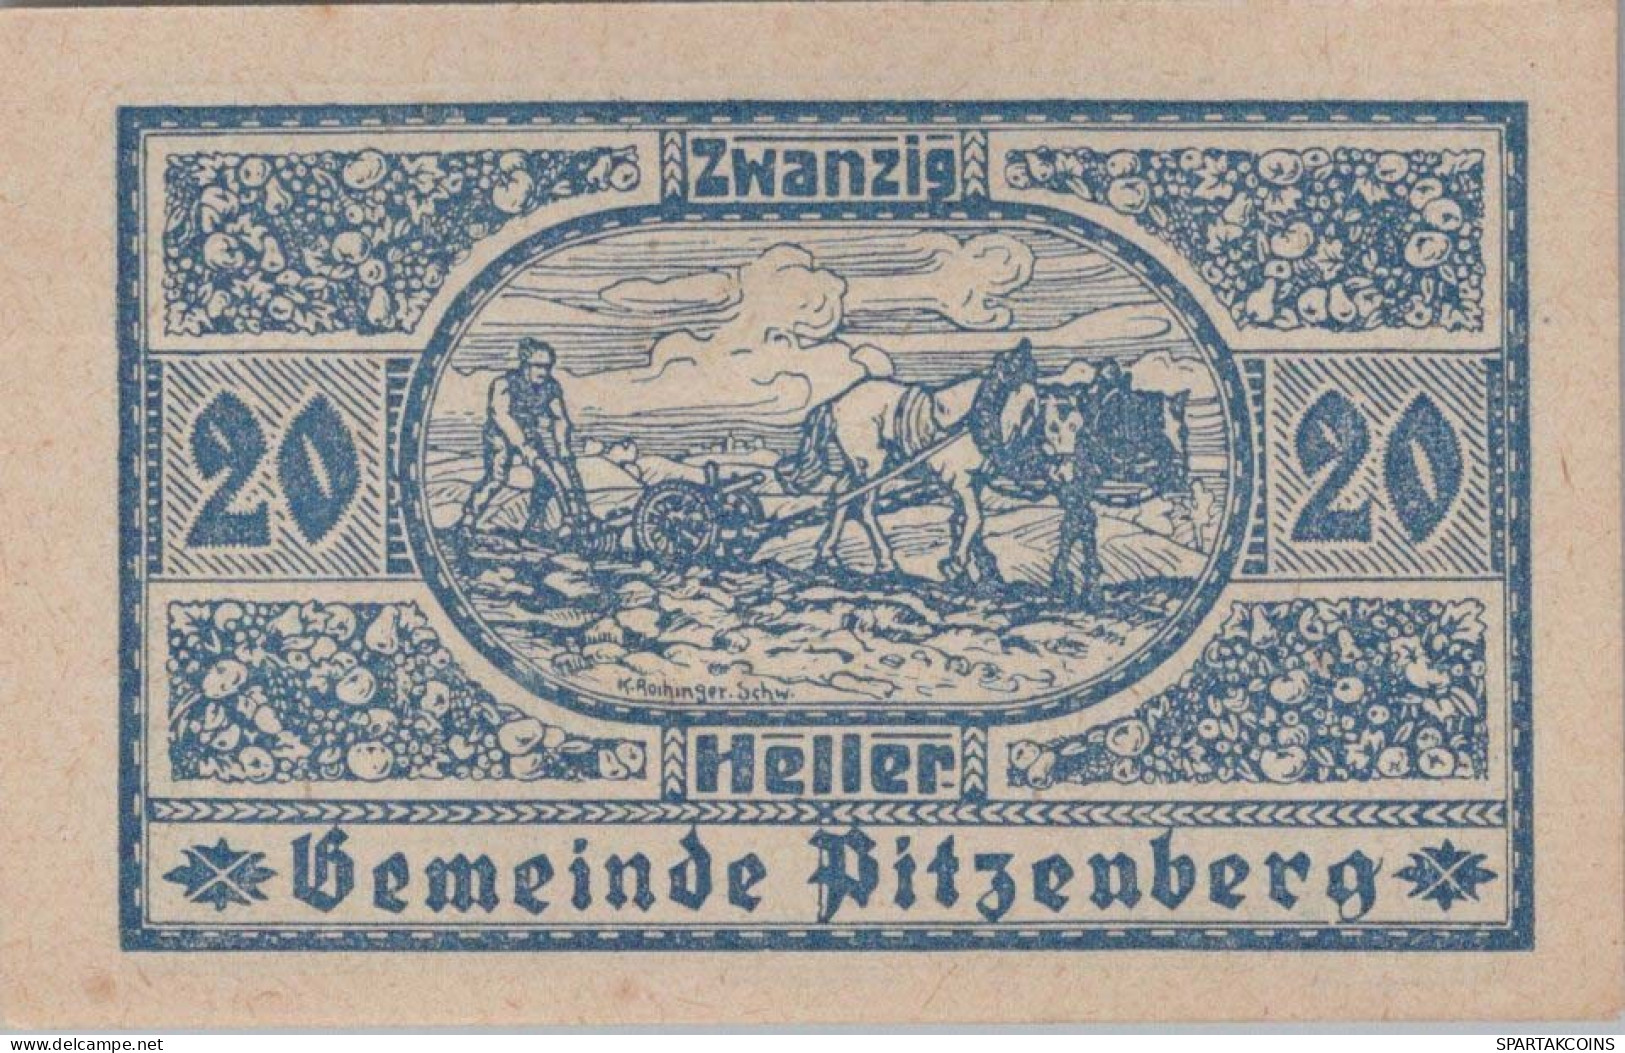 20 HELLER 1920 Stadt PITZENBERG Oberösterreich Österreich Notgeld Papiergeld Banknote #PG623 - Lokale Ausgaben